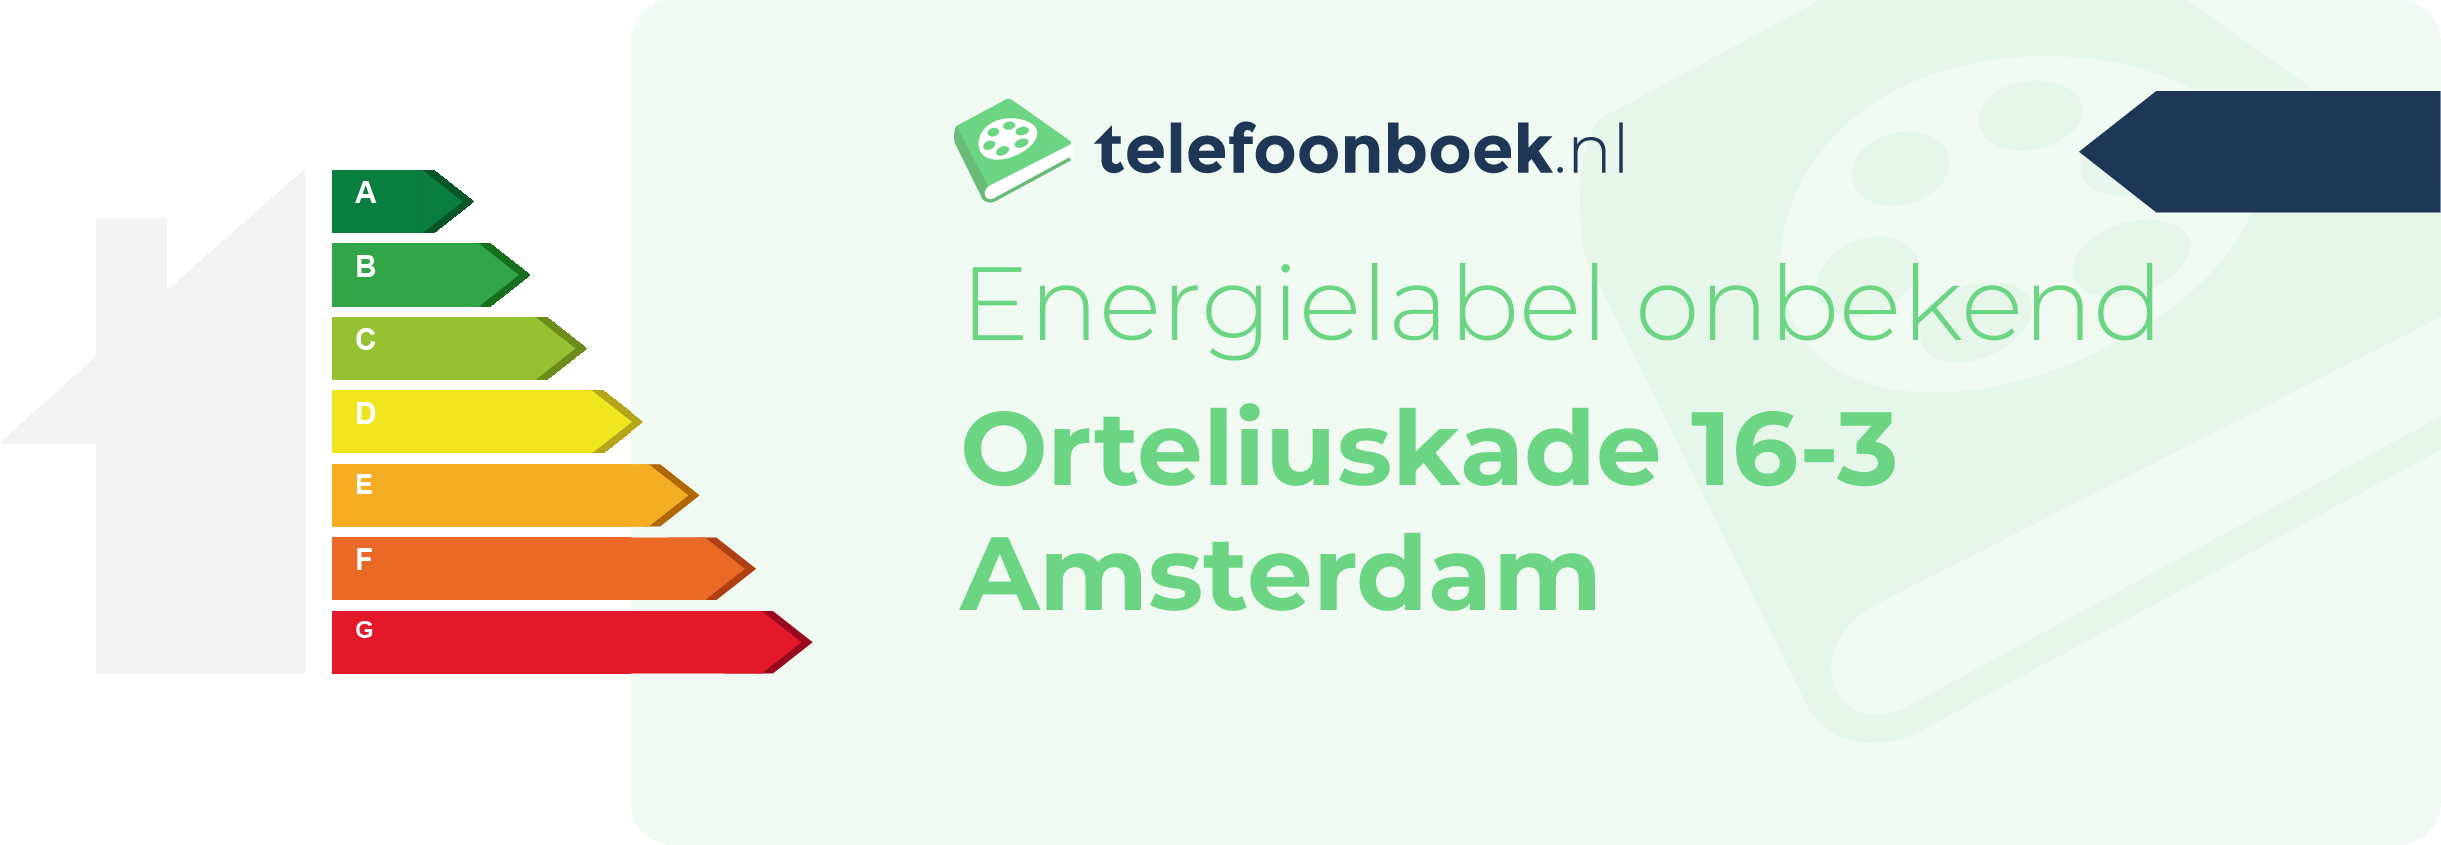 Energielabel Orteliuskade 16-3 Amsterdam